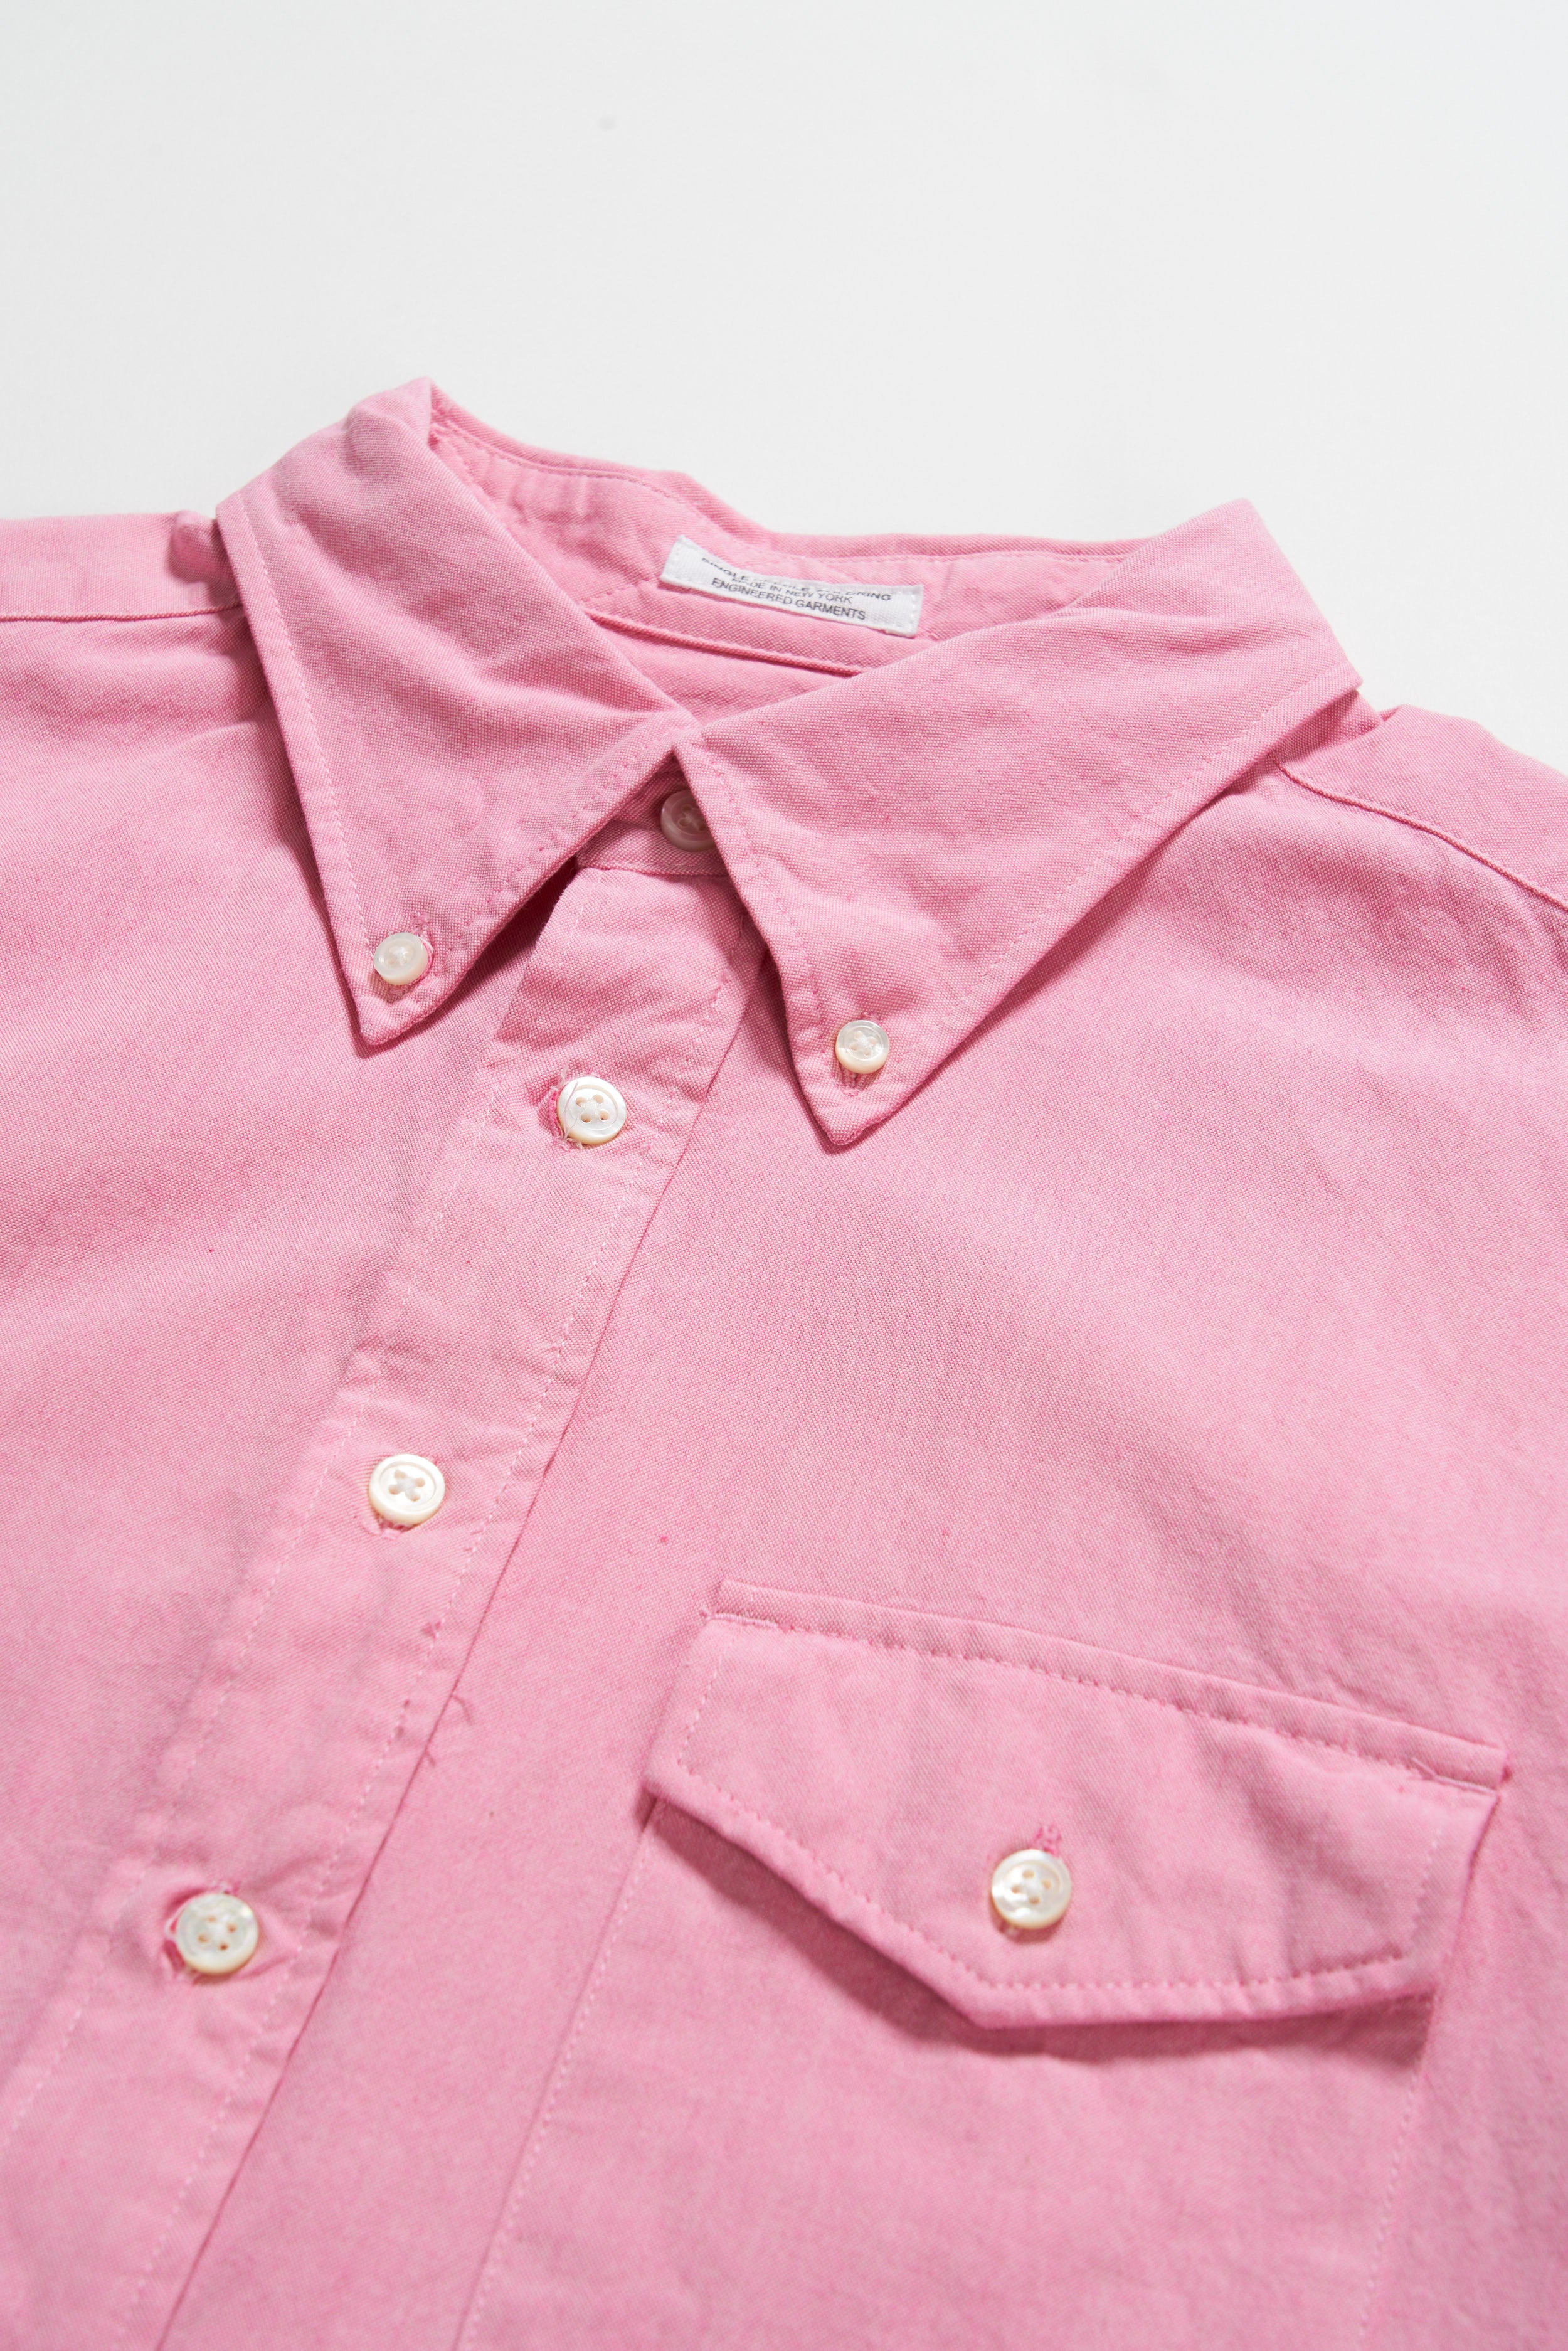 Ivy BD Shirt - Pink Cotton Iridescent